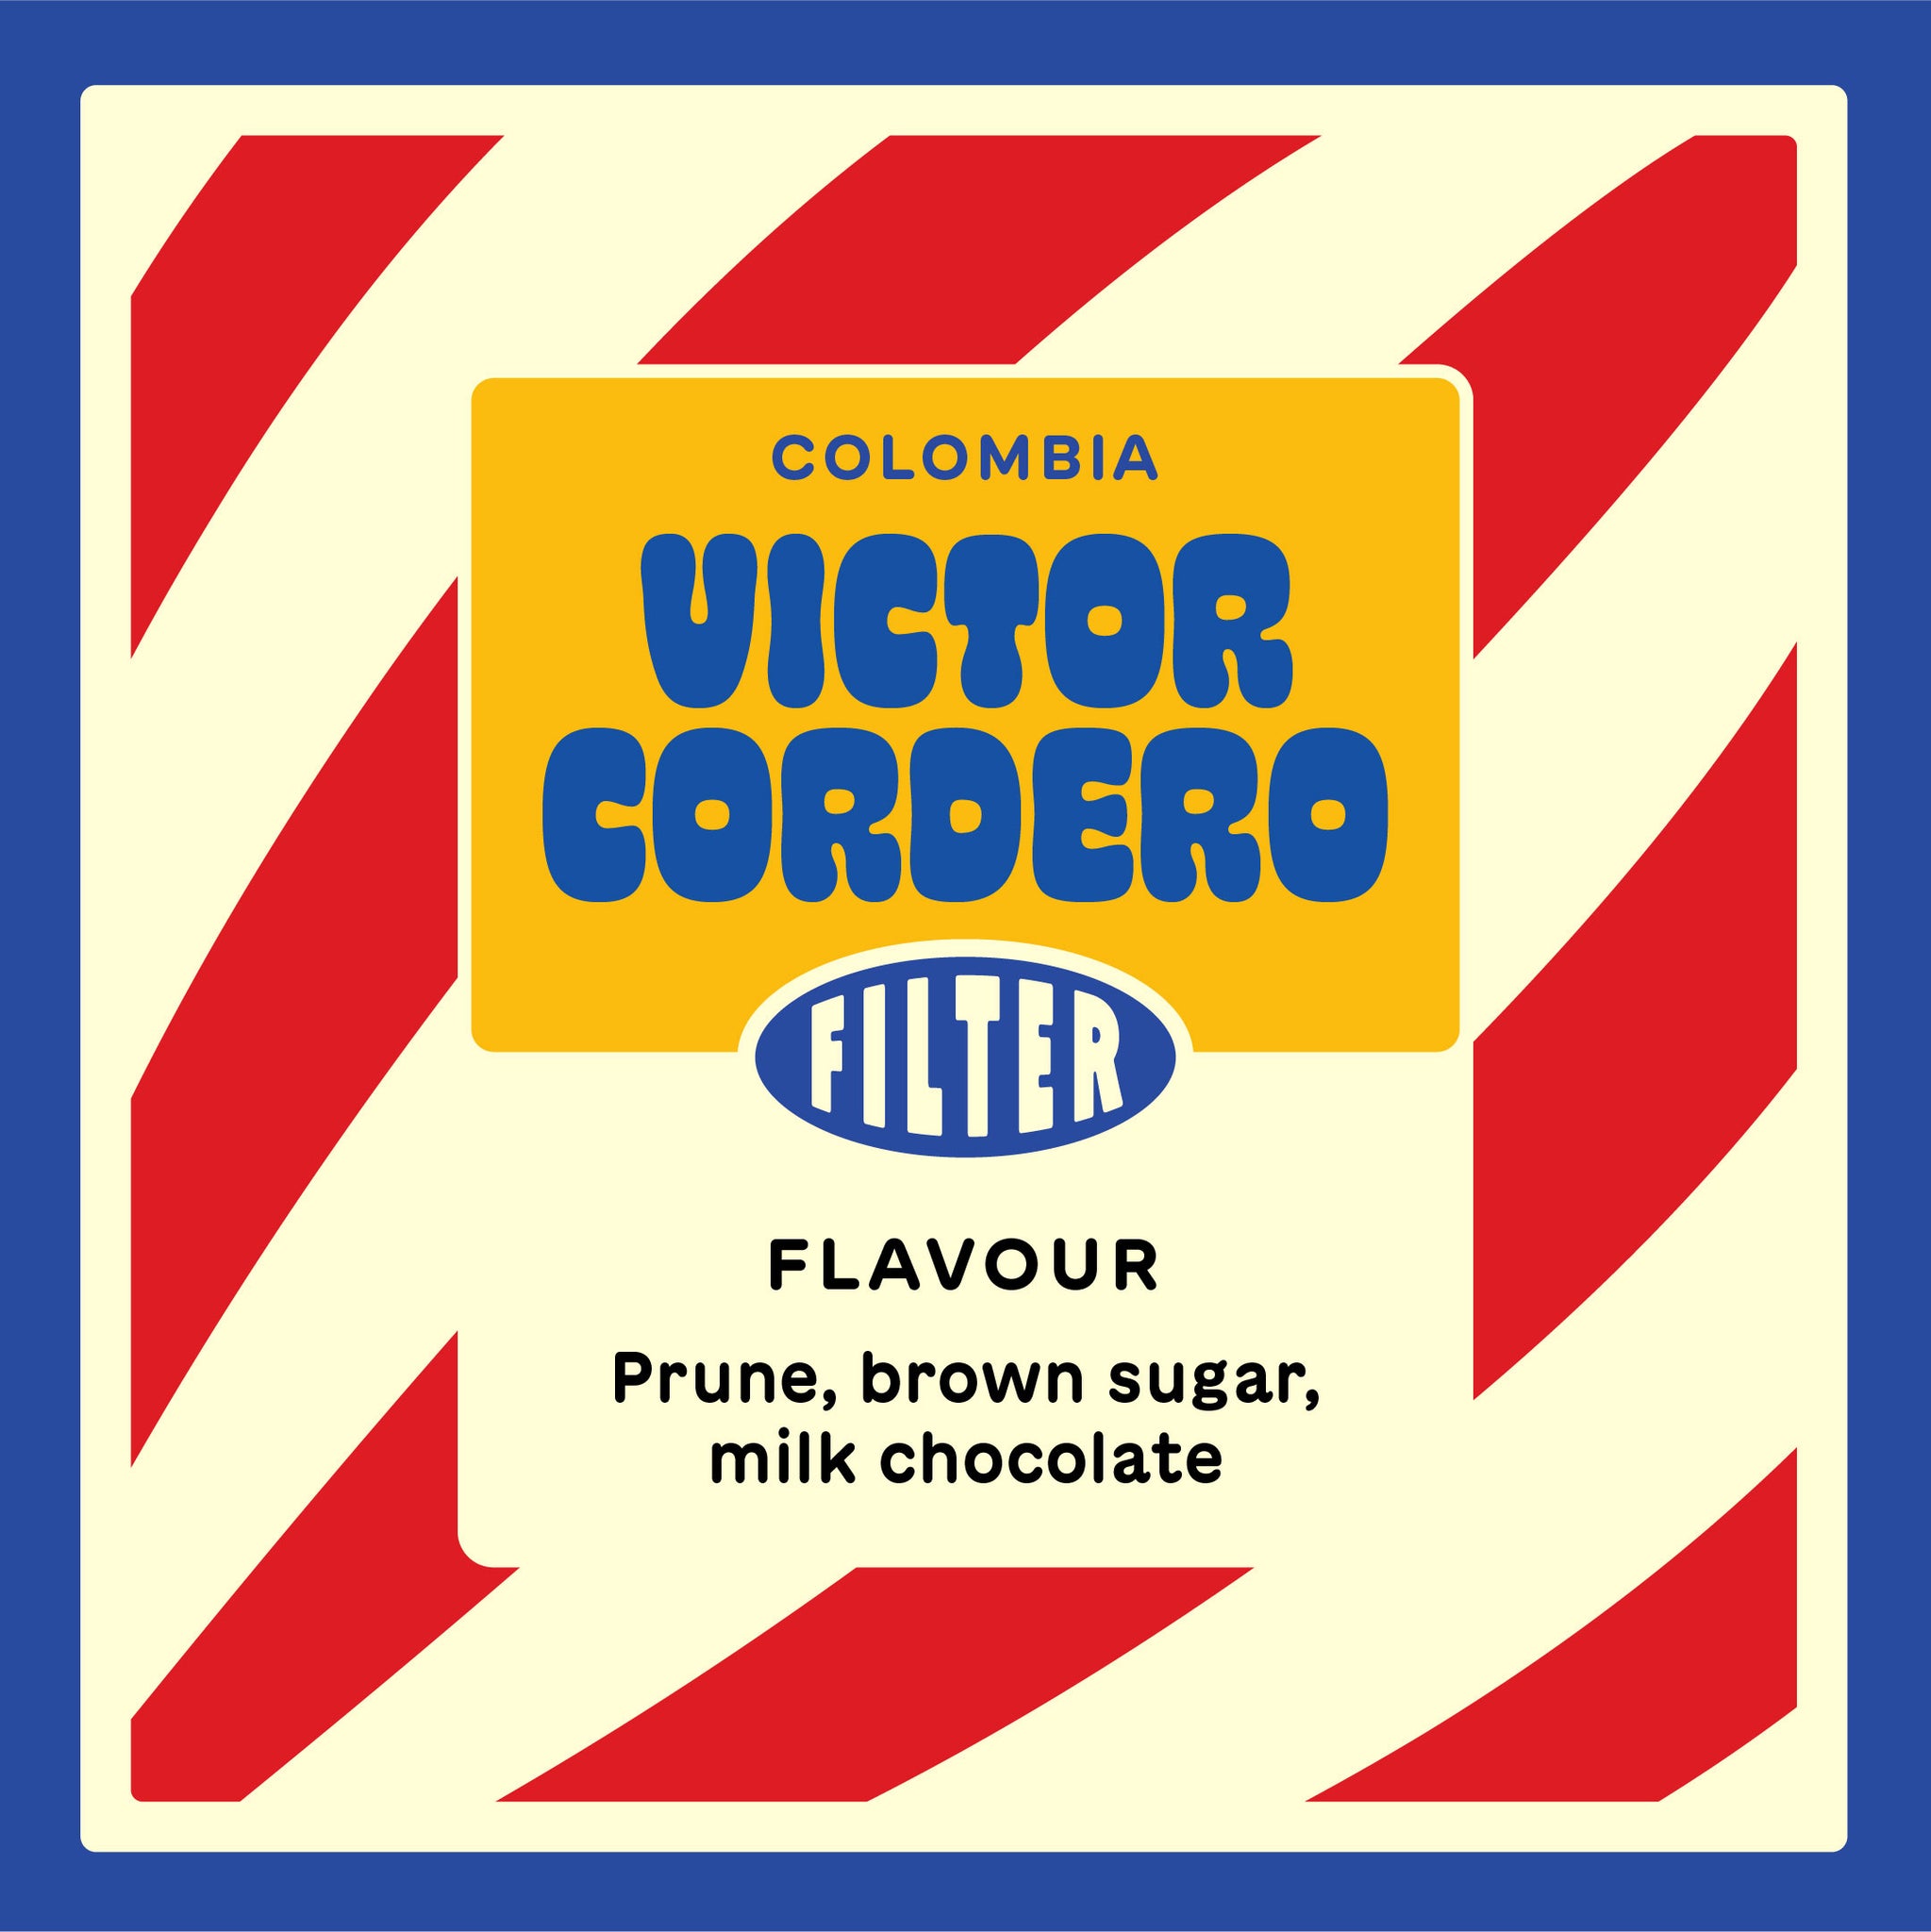 Colombia Victor Cordero